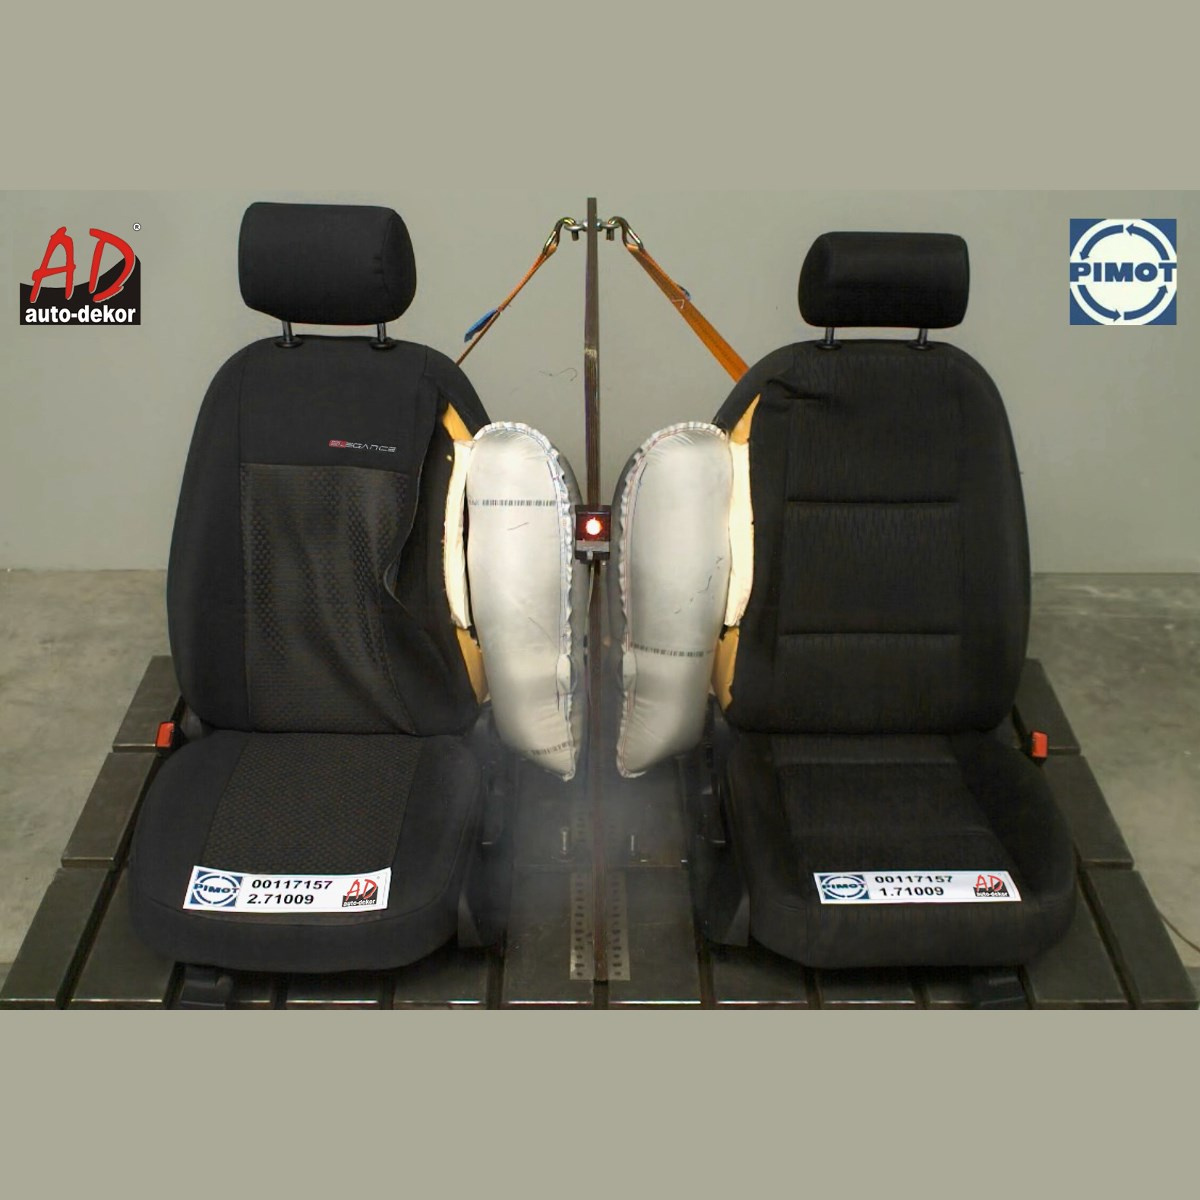 Set: TPE-Teppiche + Maßgeschneiderte Sitzbezüge für Nissan Qashqai